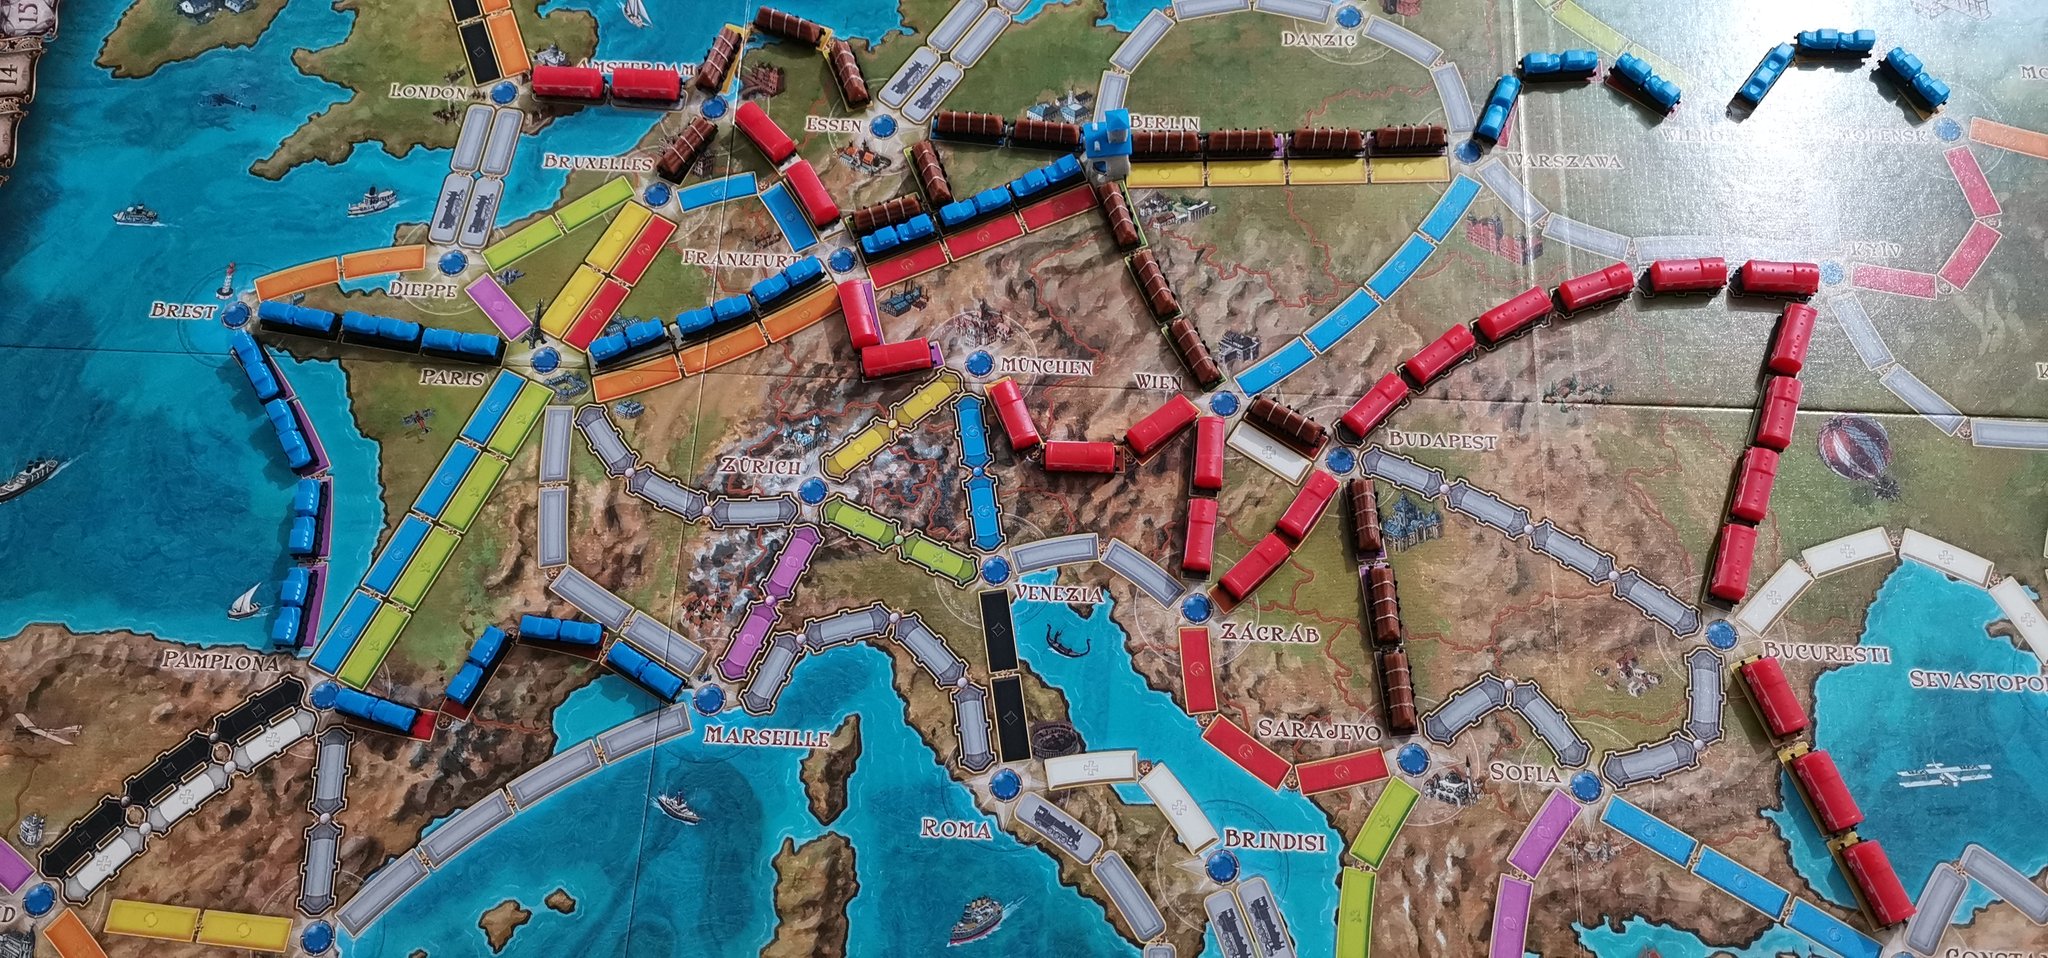 On a joué au jeu de société Les Aventuriers du Rail Europe 15e anniversaire